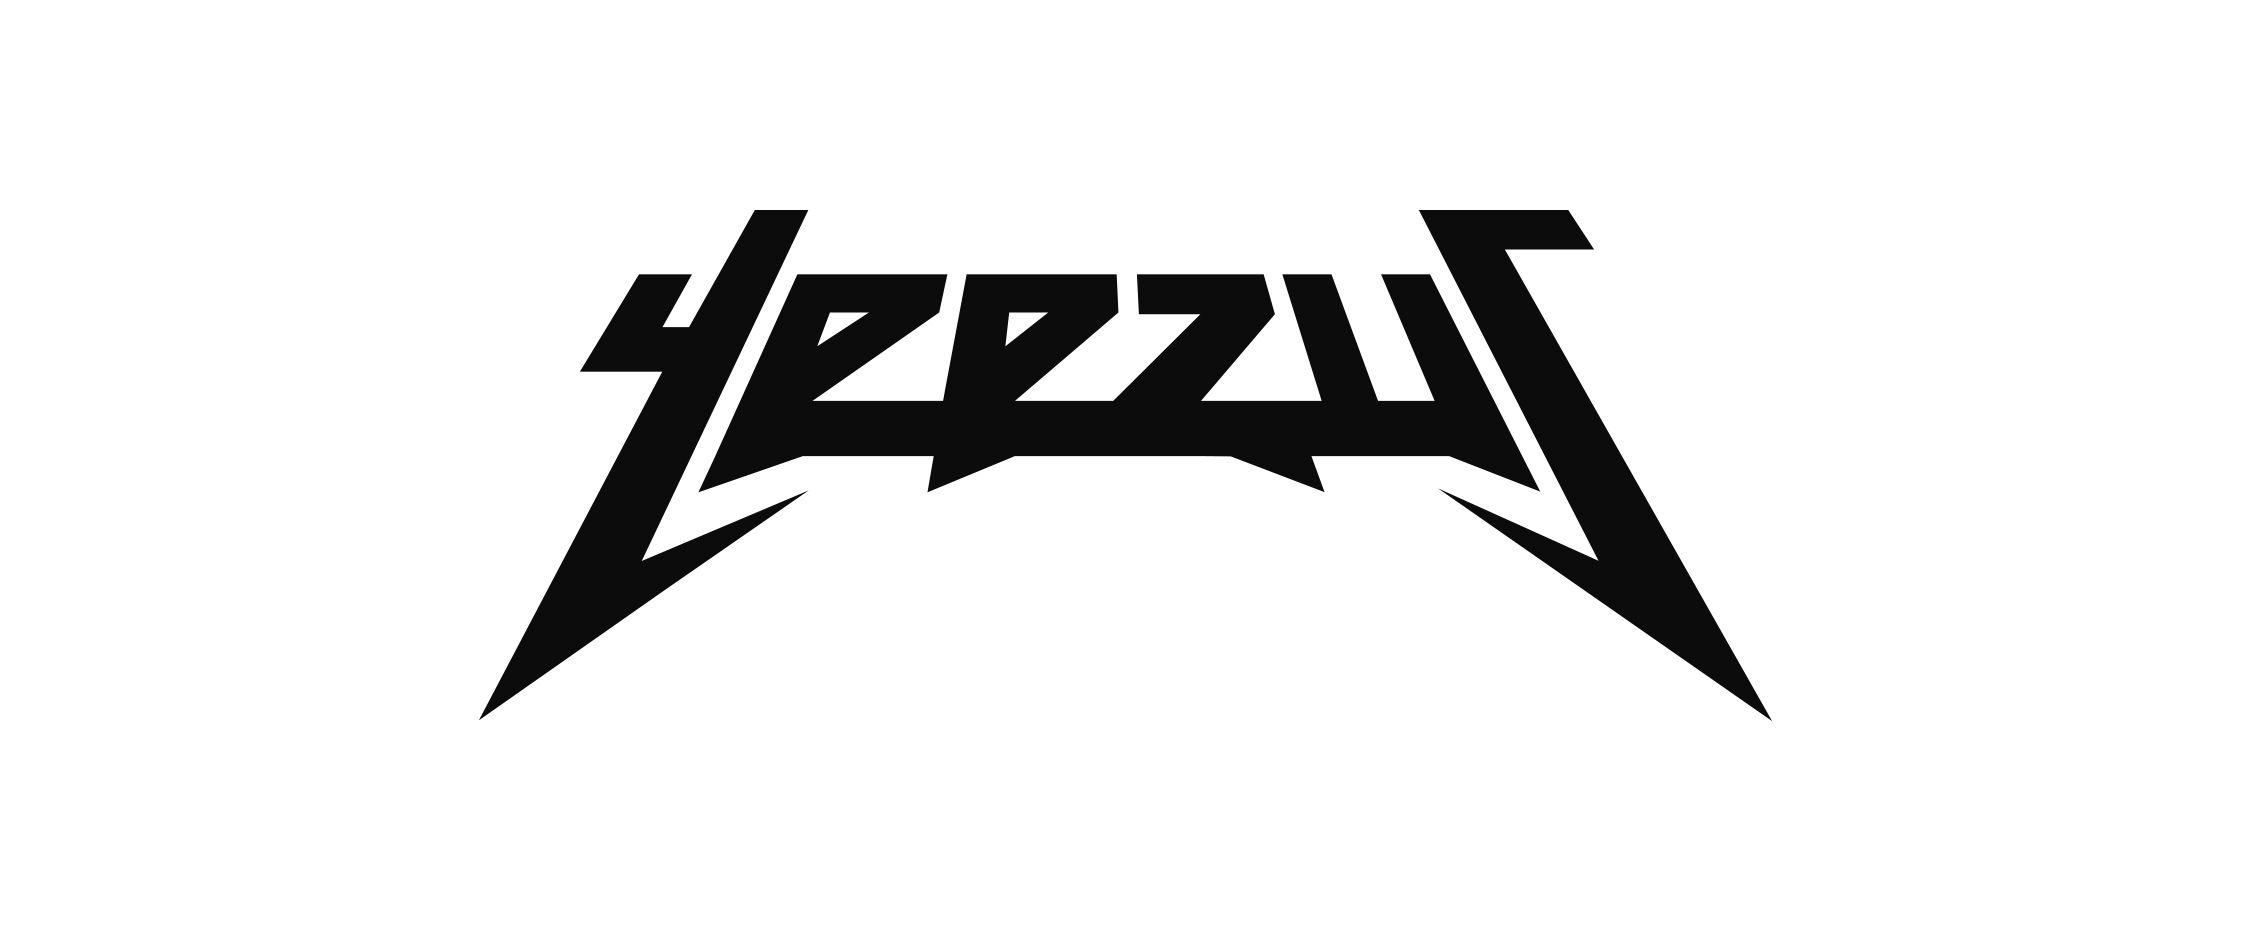 Yeezus Logo - YEEZUS LOGOS